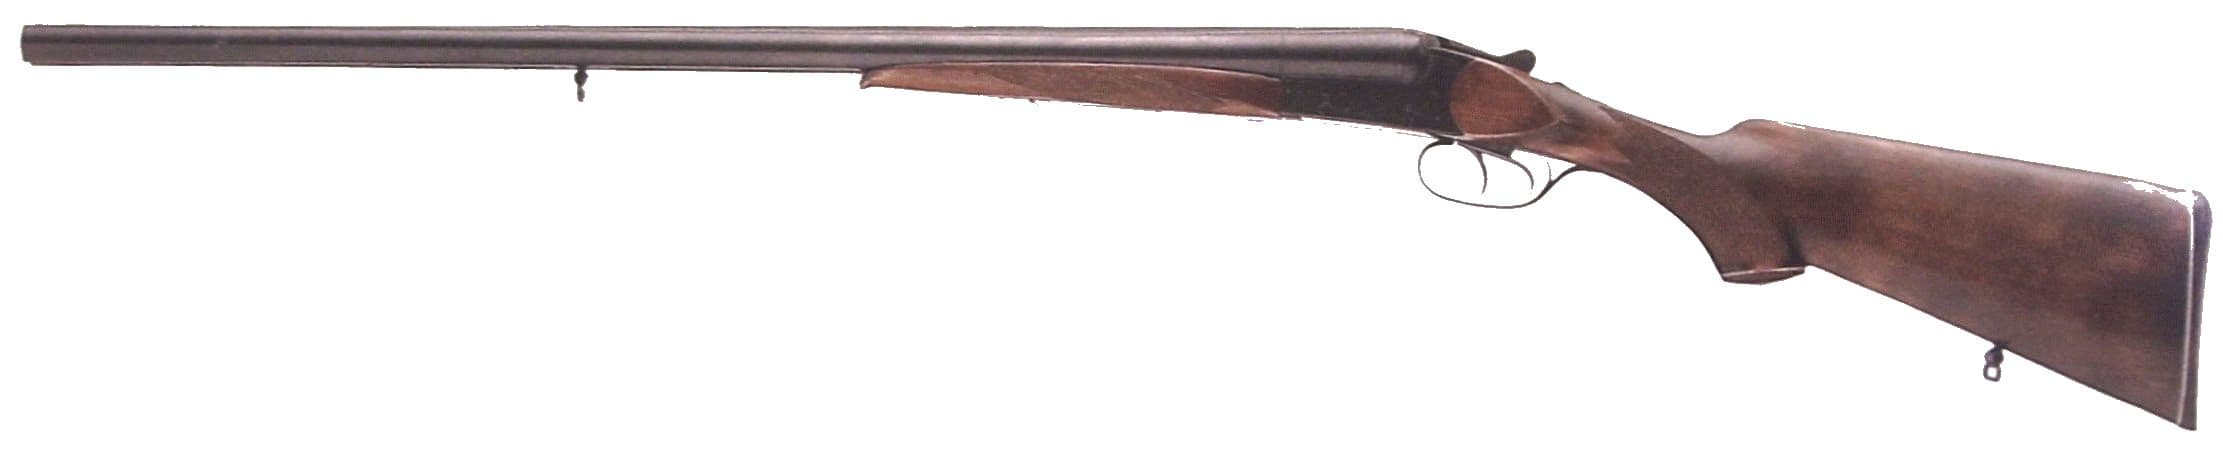 Охотничье двуствольное  ружье иж-58, izh-58. Производились на Ижевском механическом заводе.